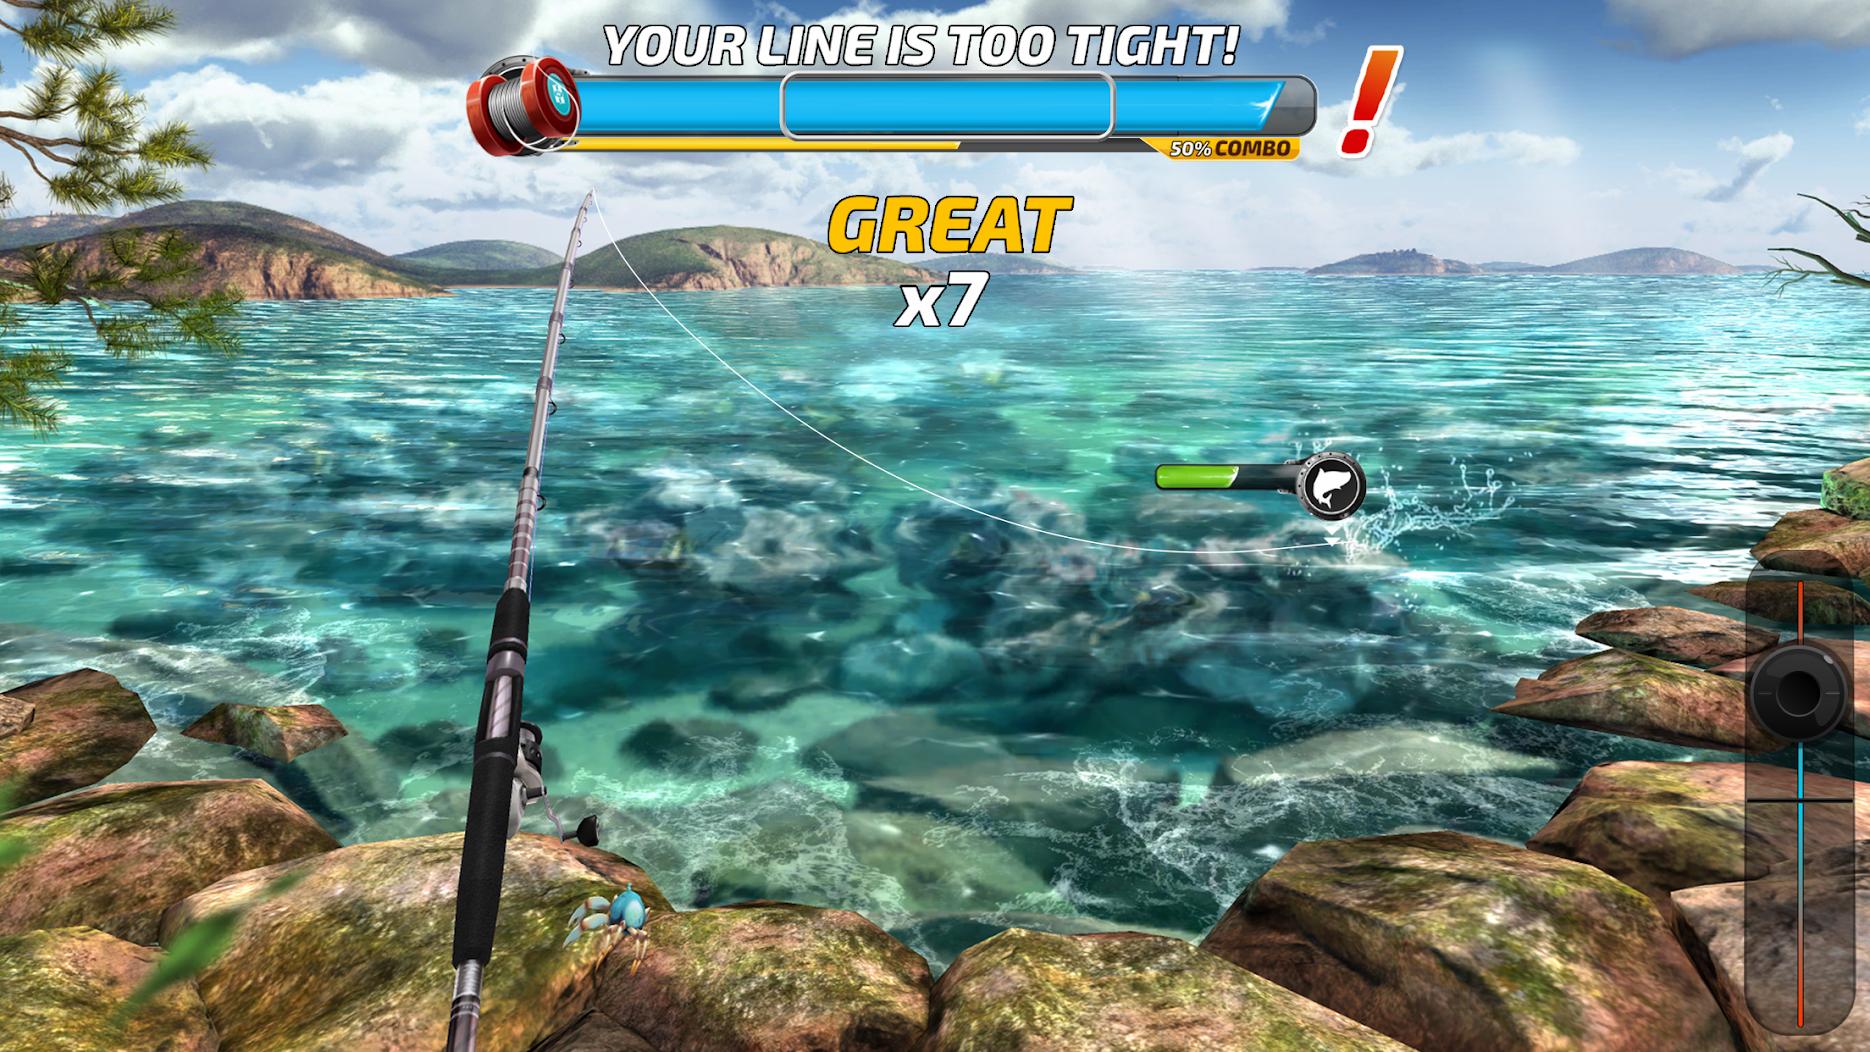 Мод на авторыбалку. Игра рыбалка. Симулятор рыбалки. Игра Fishing Clash. Игры про рыбалку на андроид.